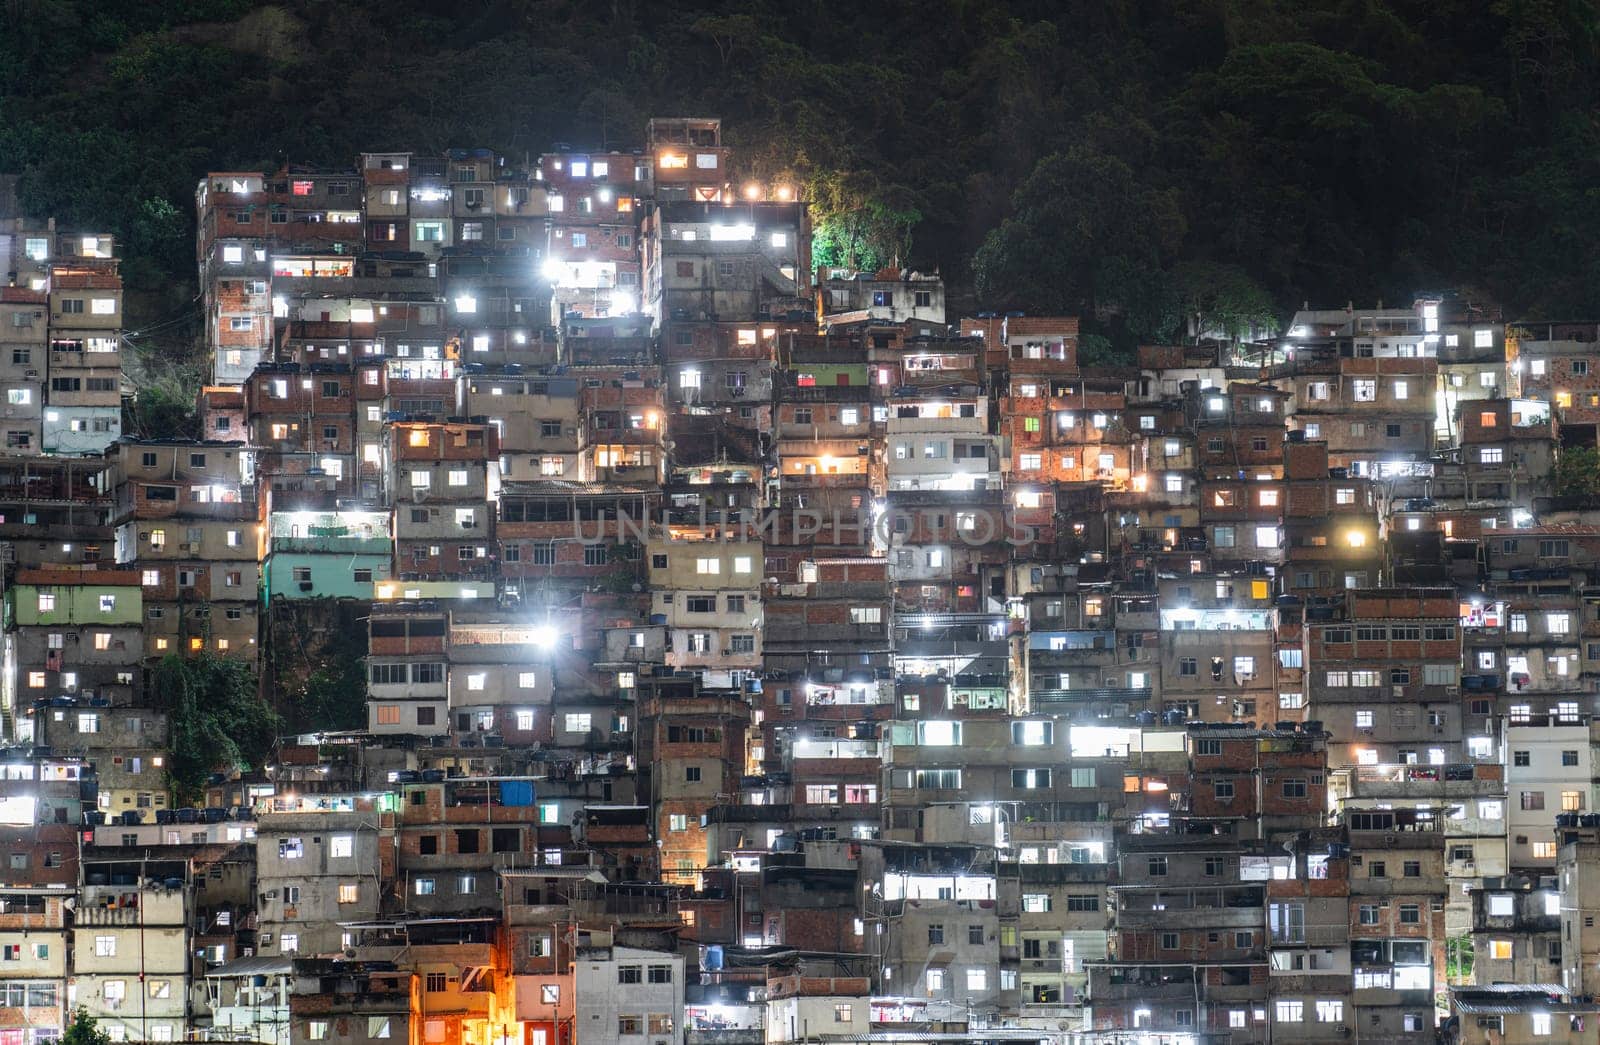 Densely Packed Houses in Urban Nighttime Hillside Favela by FerradalFCG